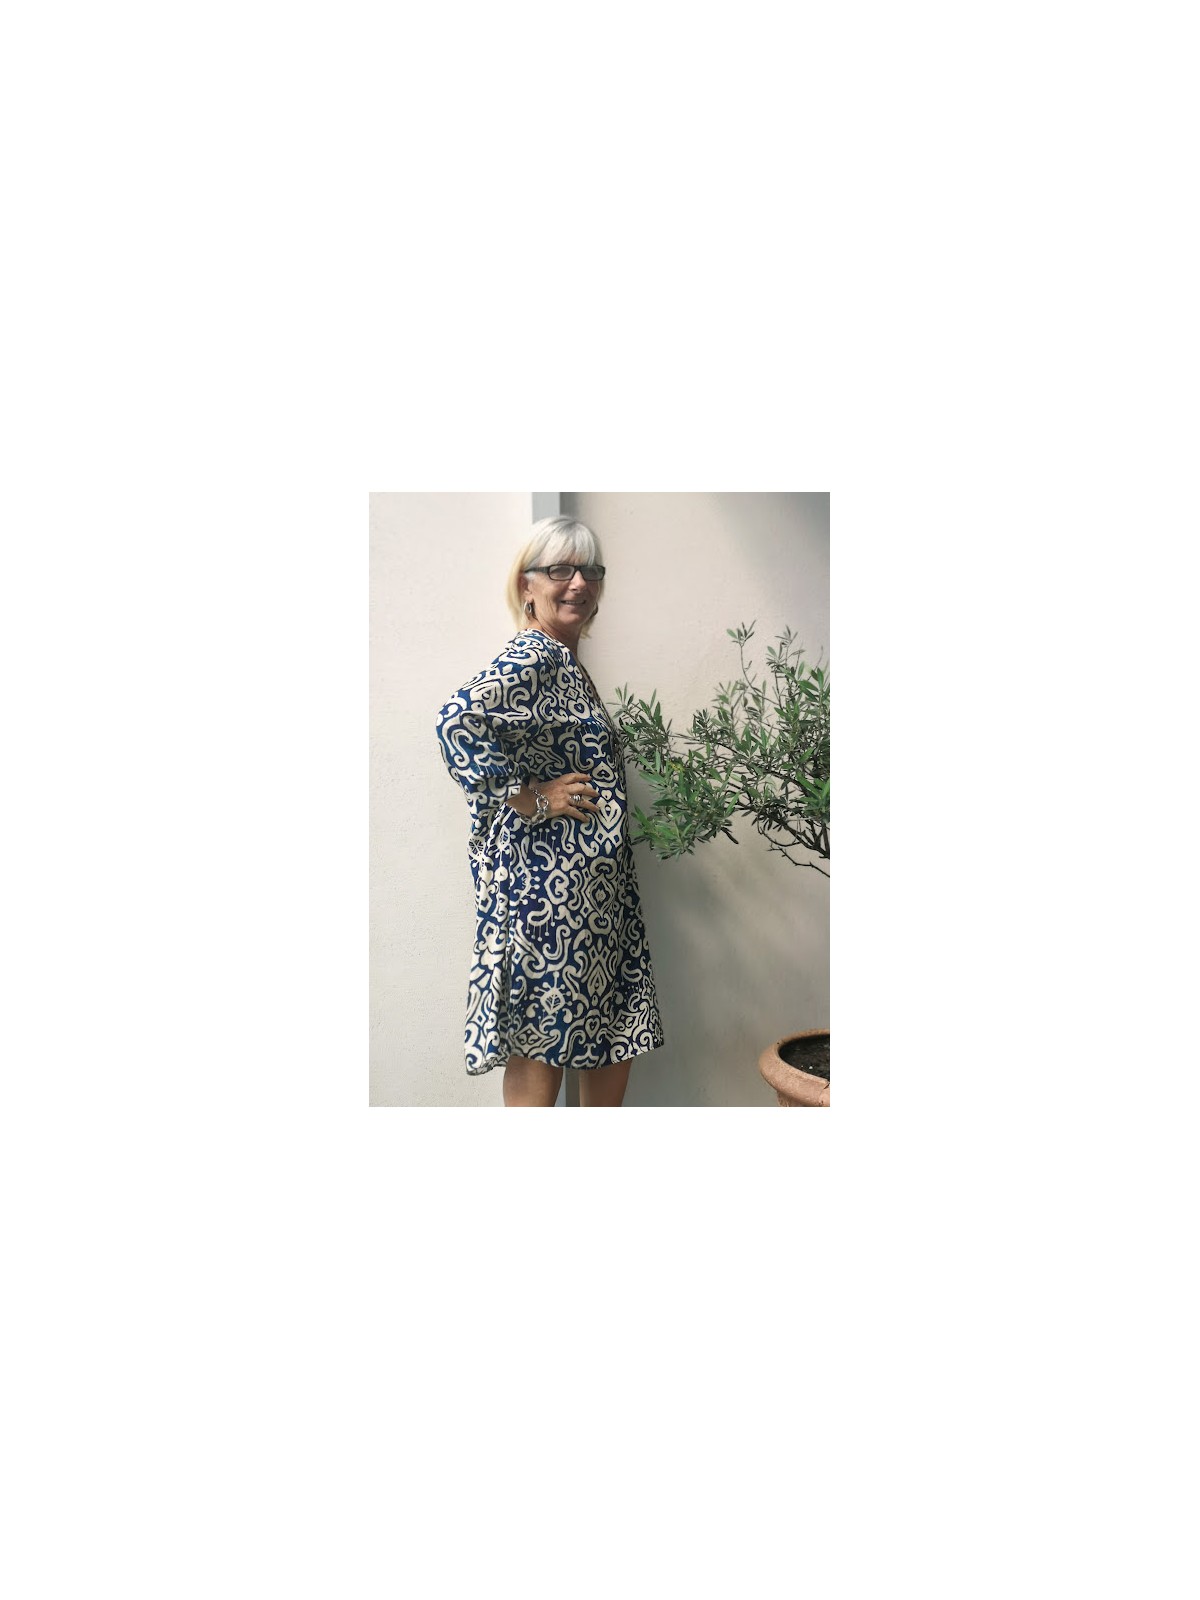 Robe bicolore encolure V avec coupe trapeze bleu et blanc | 2 vue de profil | Tilleulmenthe boutique de mode femme en ligne